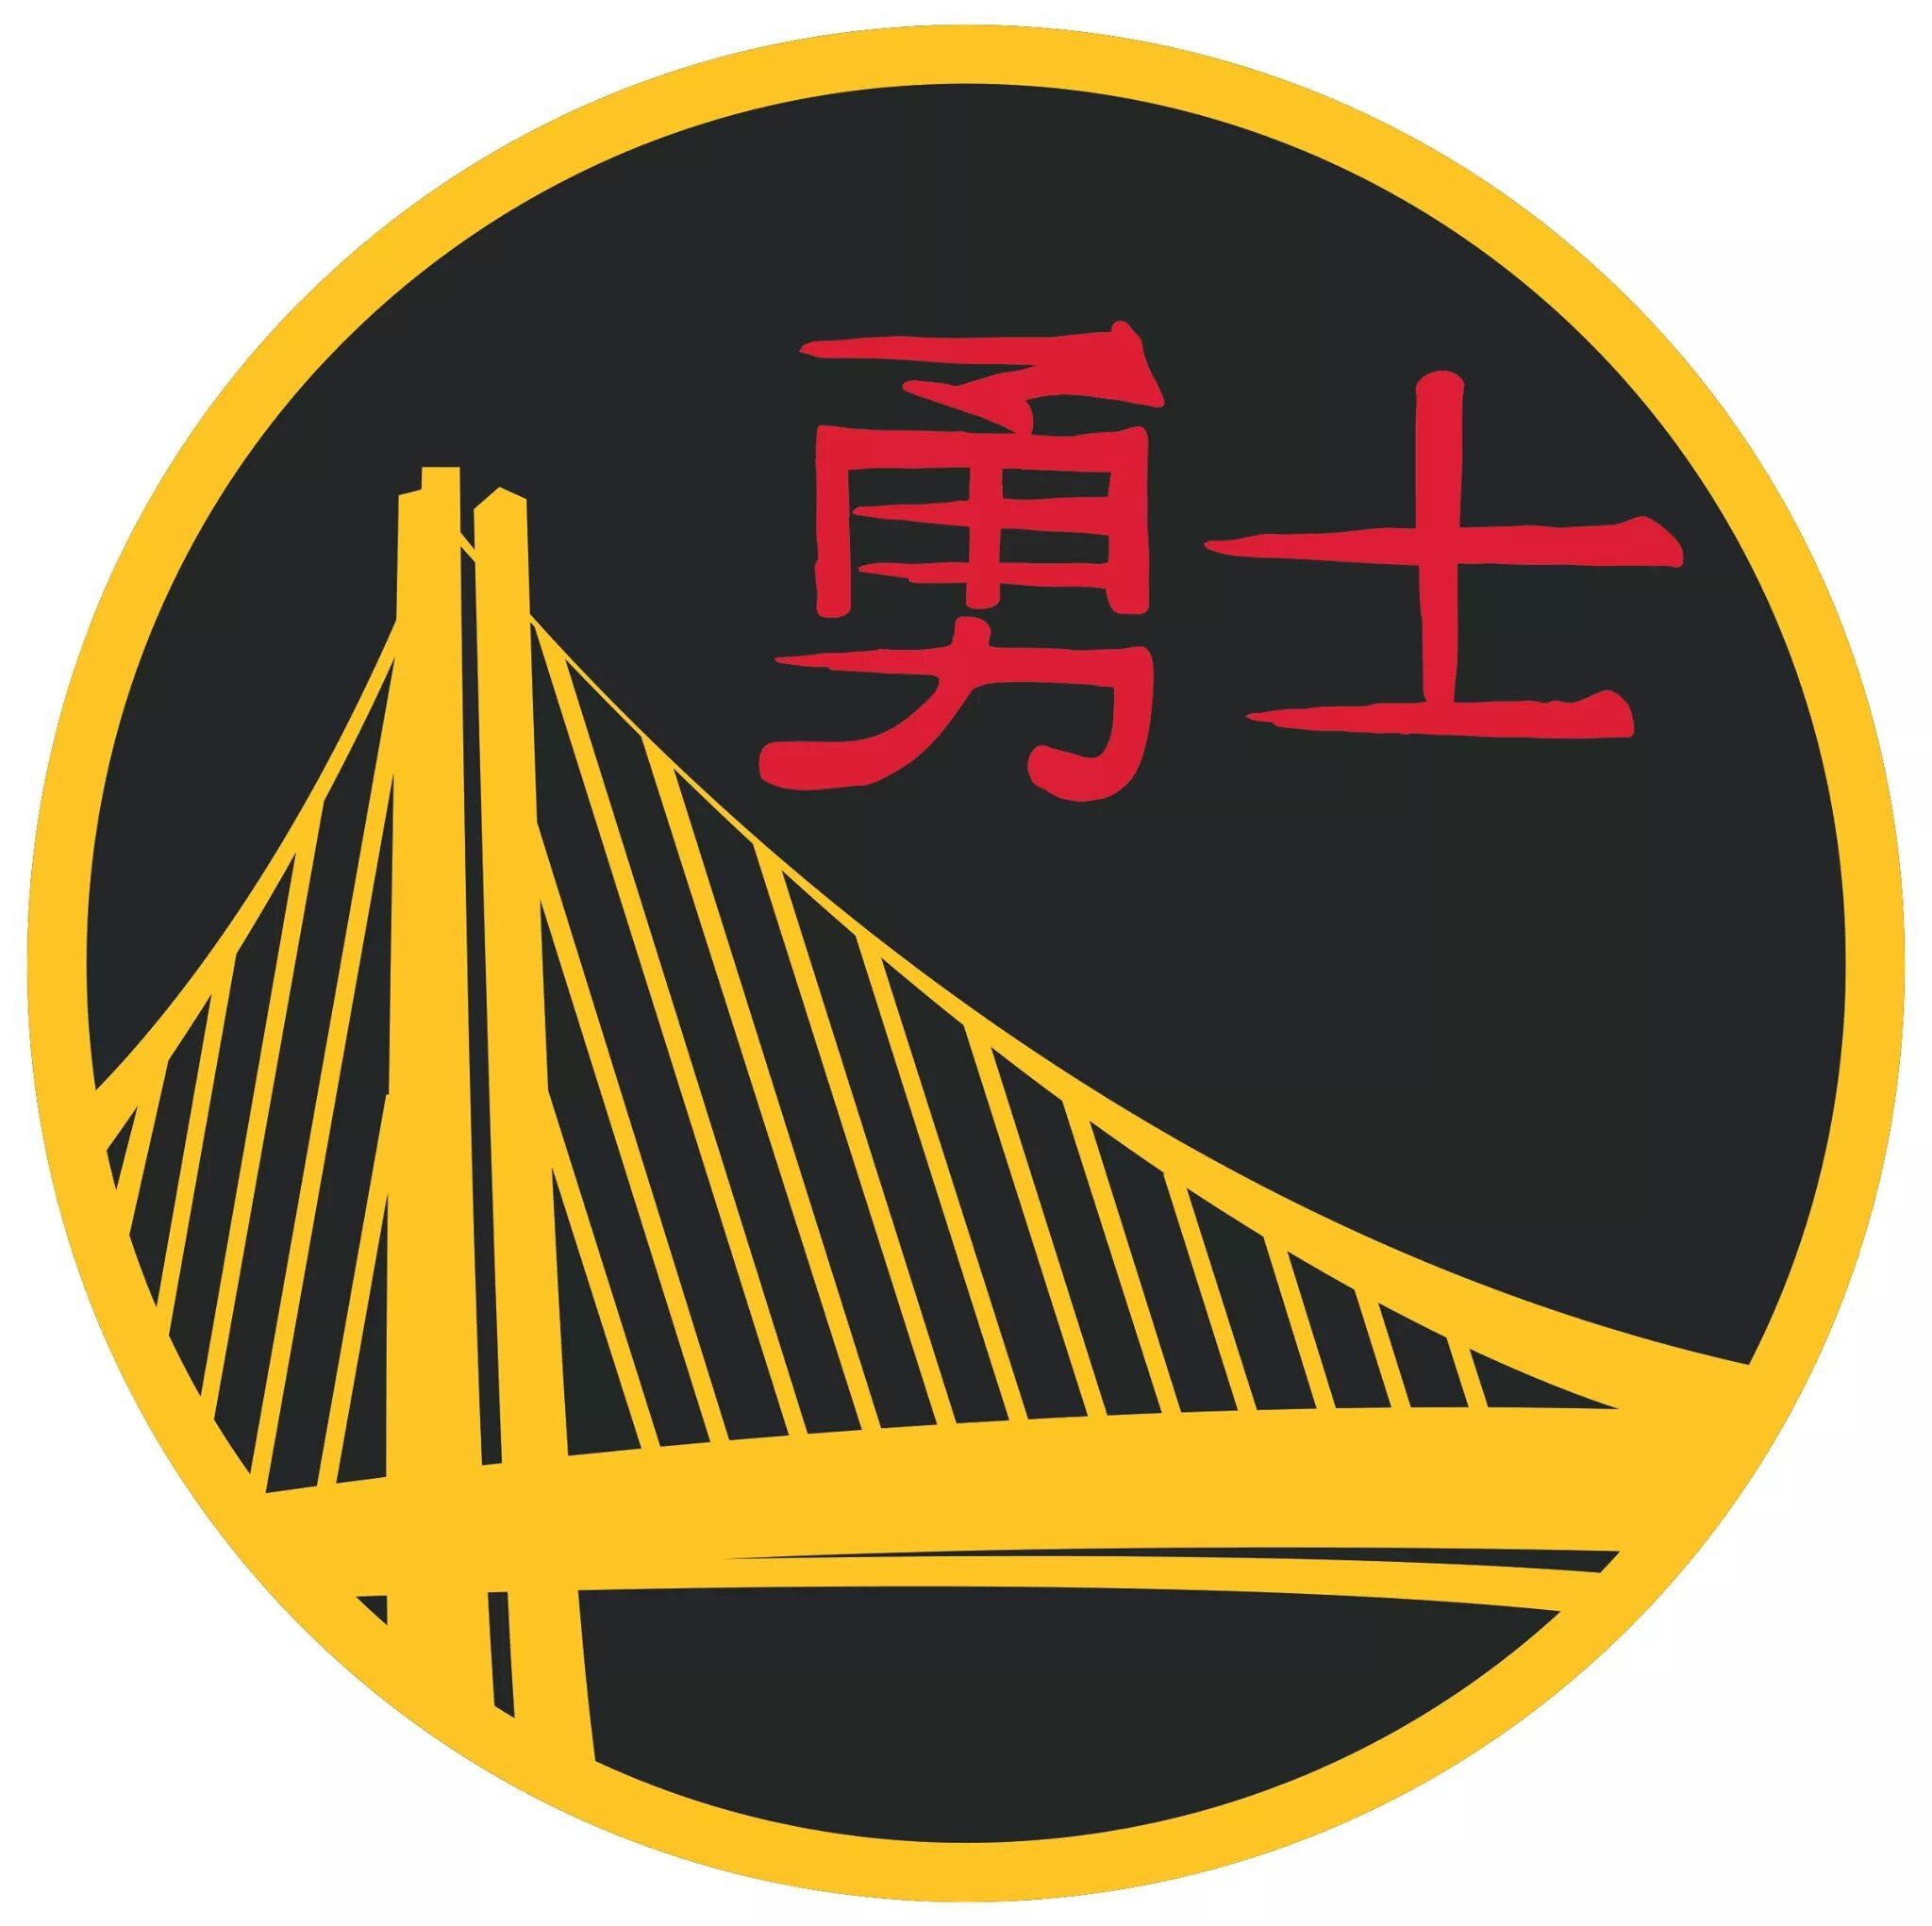 Golden state warriors Logos